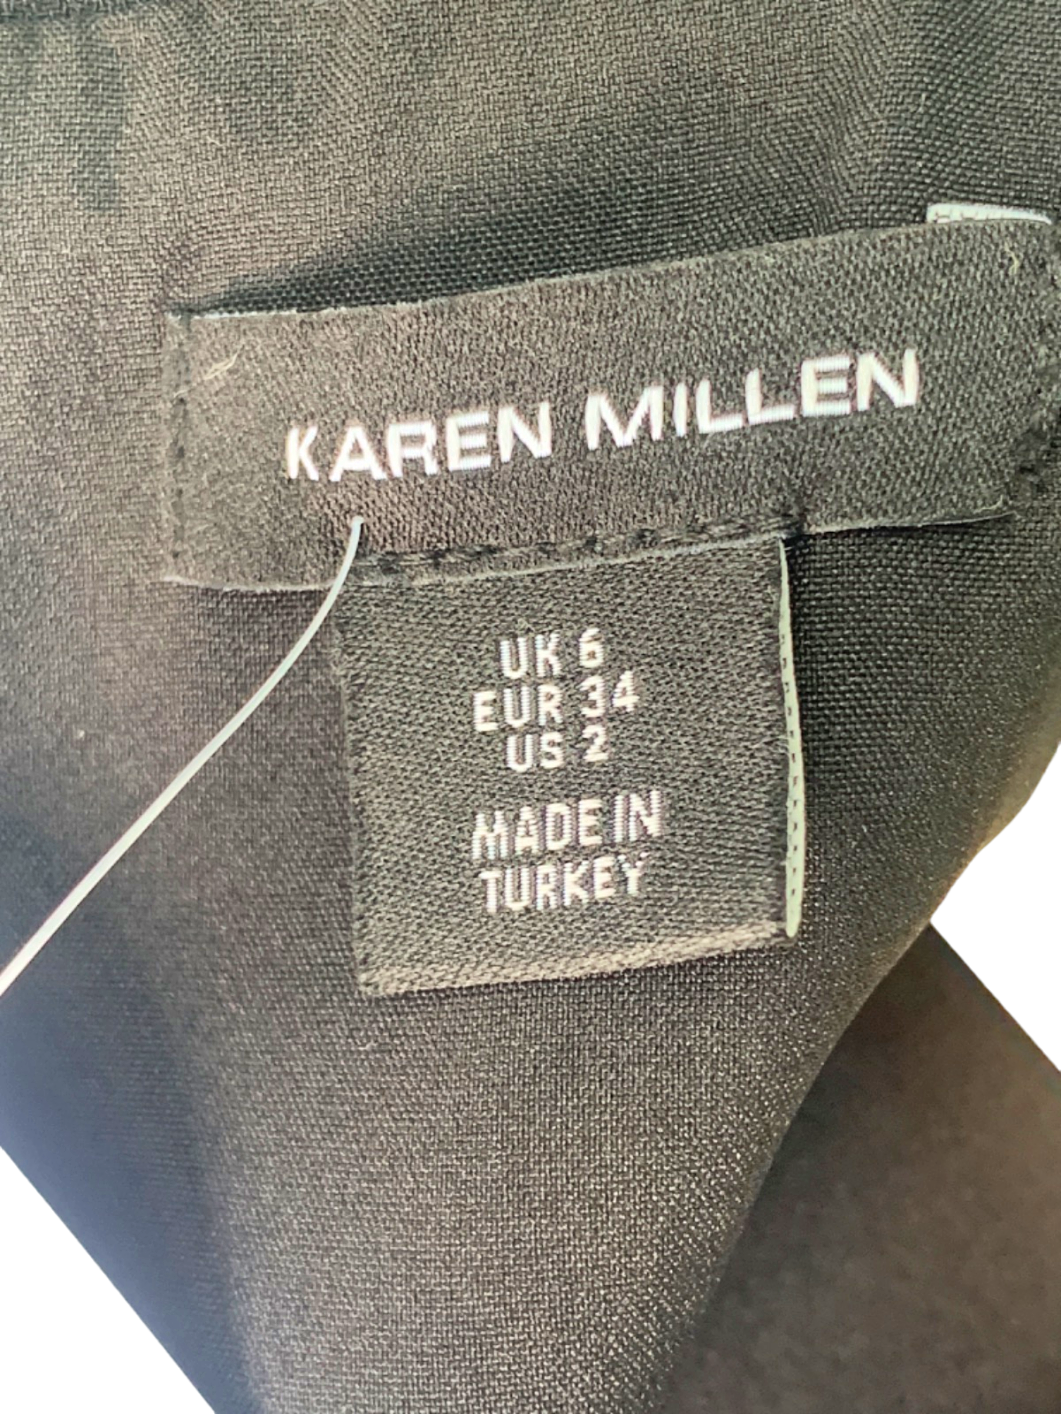 Karen Millen Black/White Midi Dress UK 6